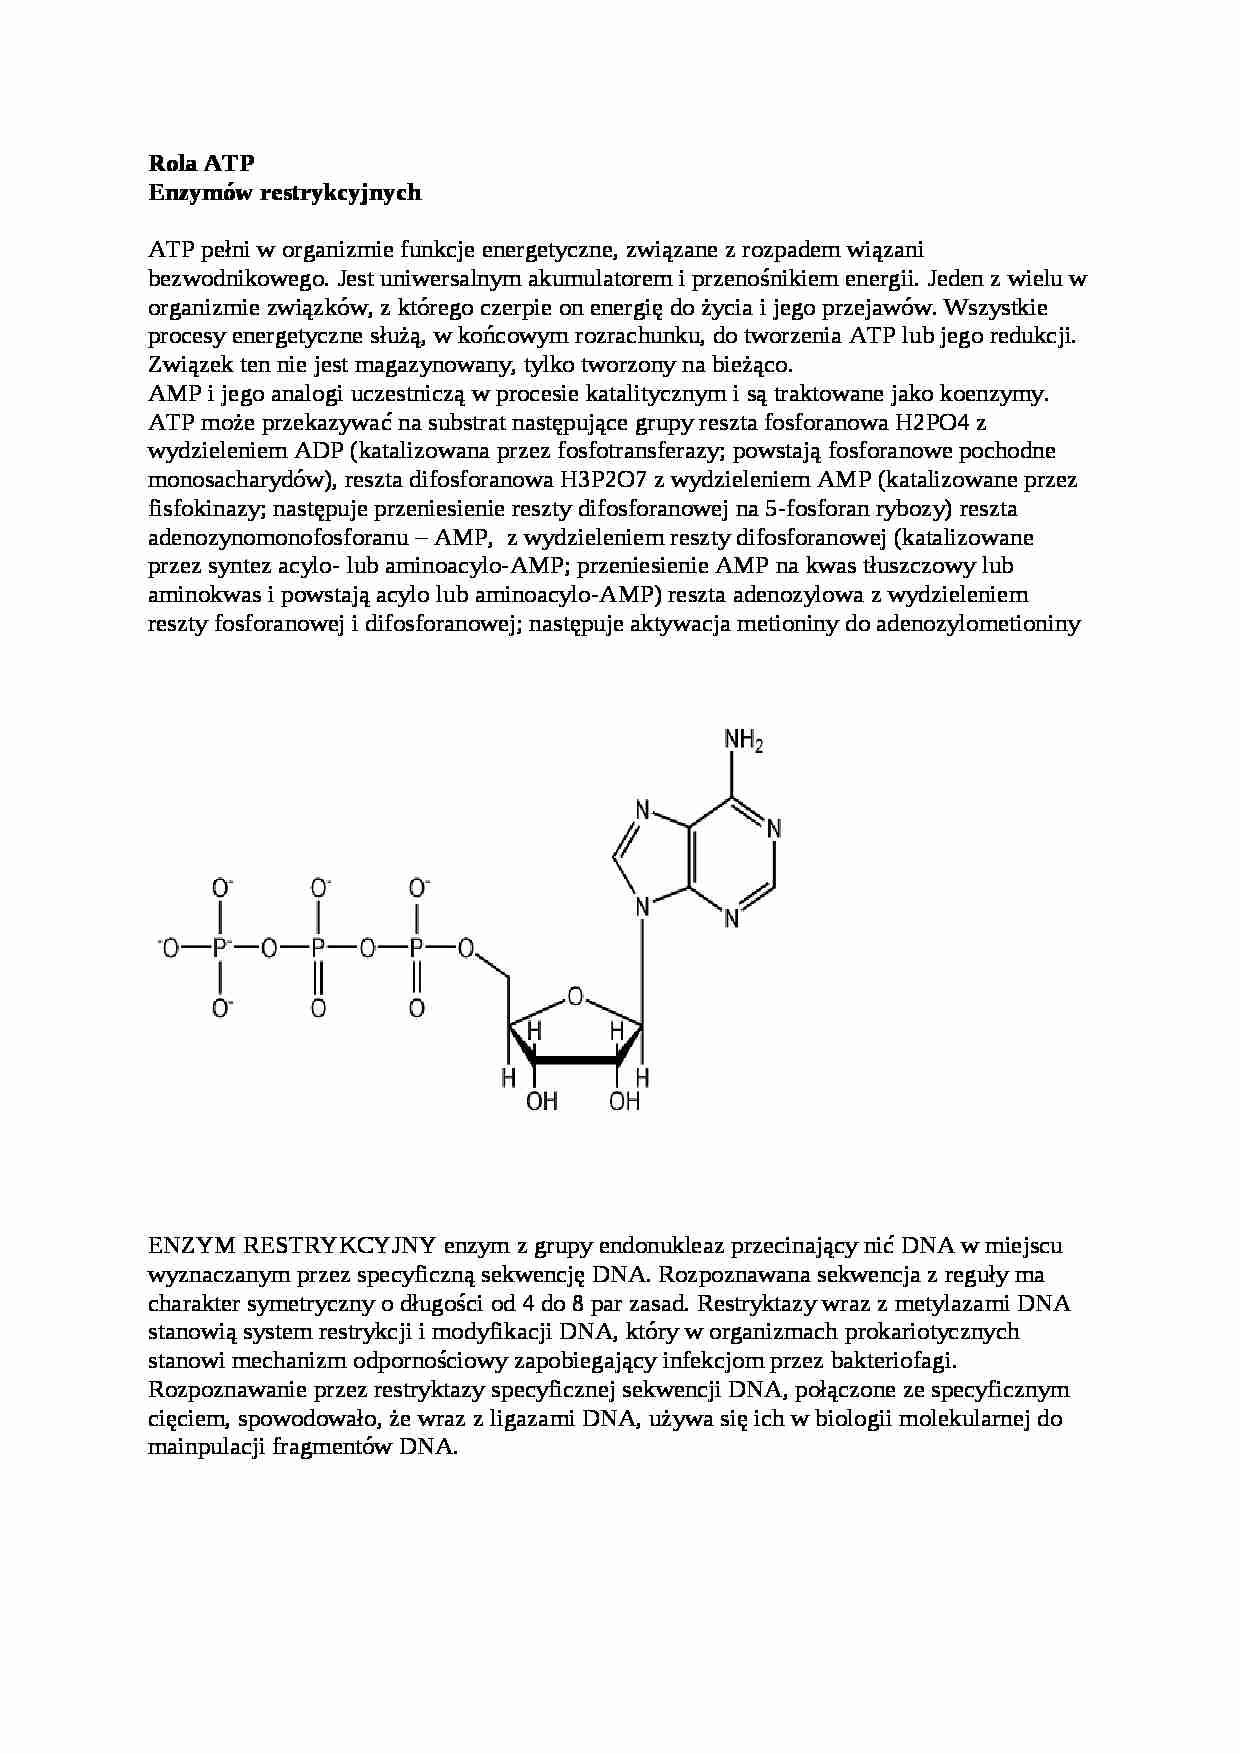 Wykład - rola ATP i enzymów restrykcyjnych, sem III - strona 1